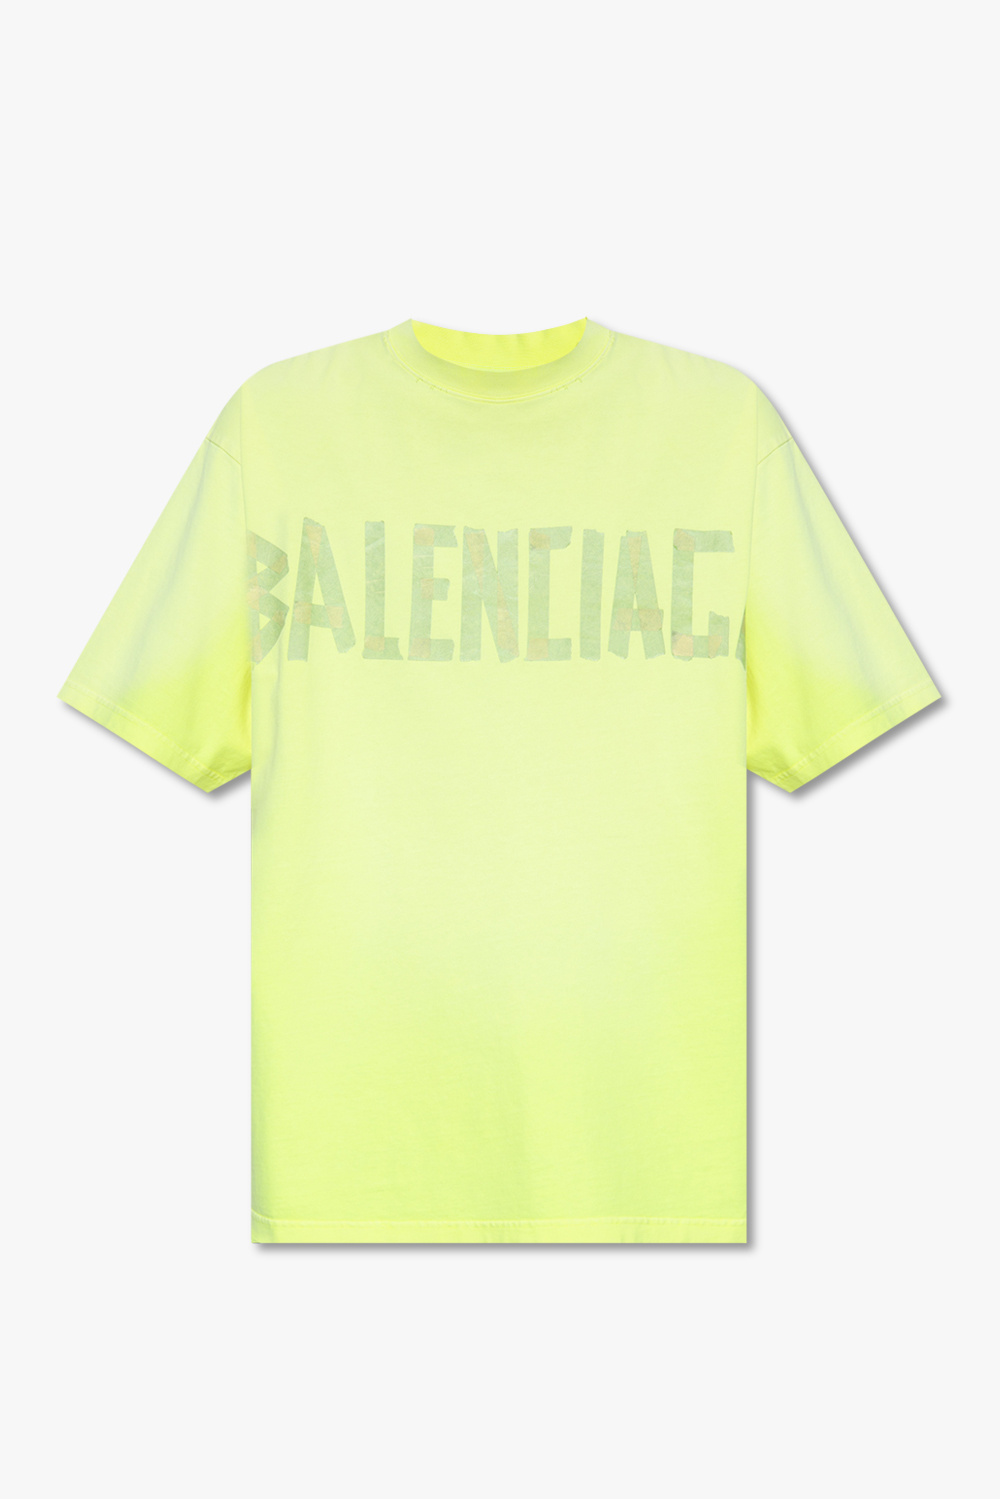 Balenciaga Neon Yellow Logo Print Track Jacket M Balenciaga